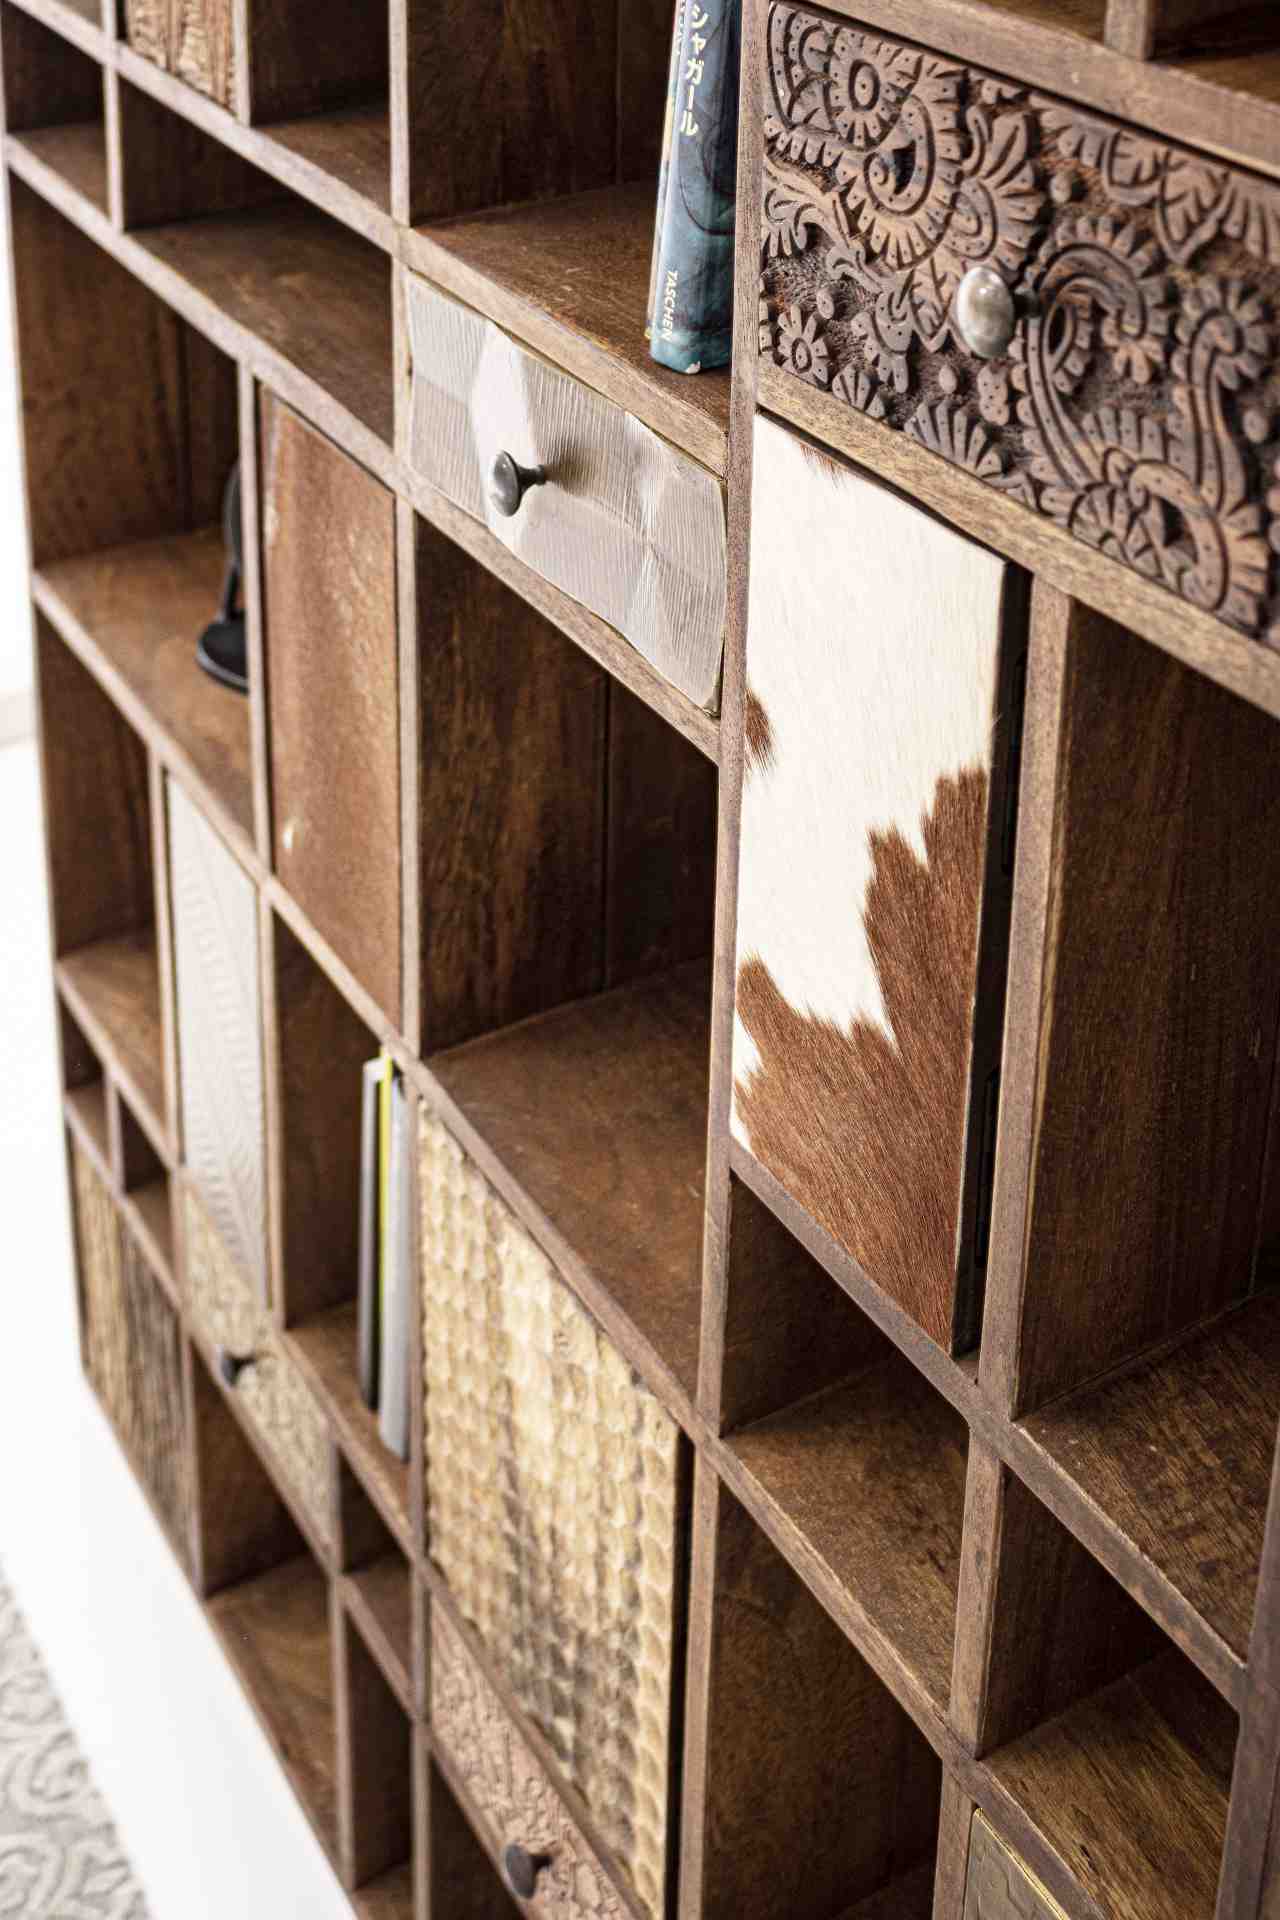 Das Bücherregal Dhaval überzeugt mit seinem klassischen Design. Gefertigt wurde es aus Mangoholz, welches einen natürlichen Farbton besitzt.Das Bücherregal verfügt über zehn Türen und sieben Schubladen. Die Breite beträgt 115 cm.